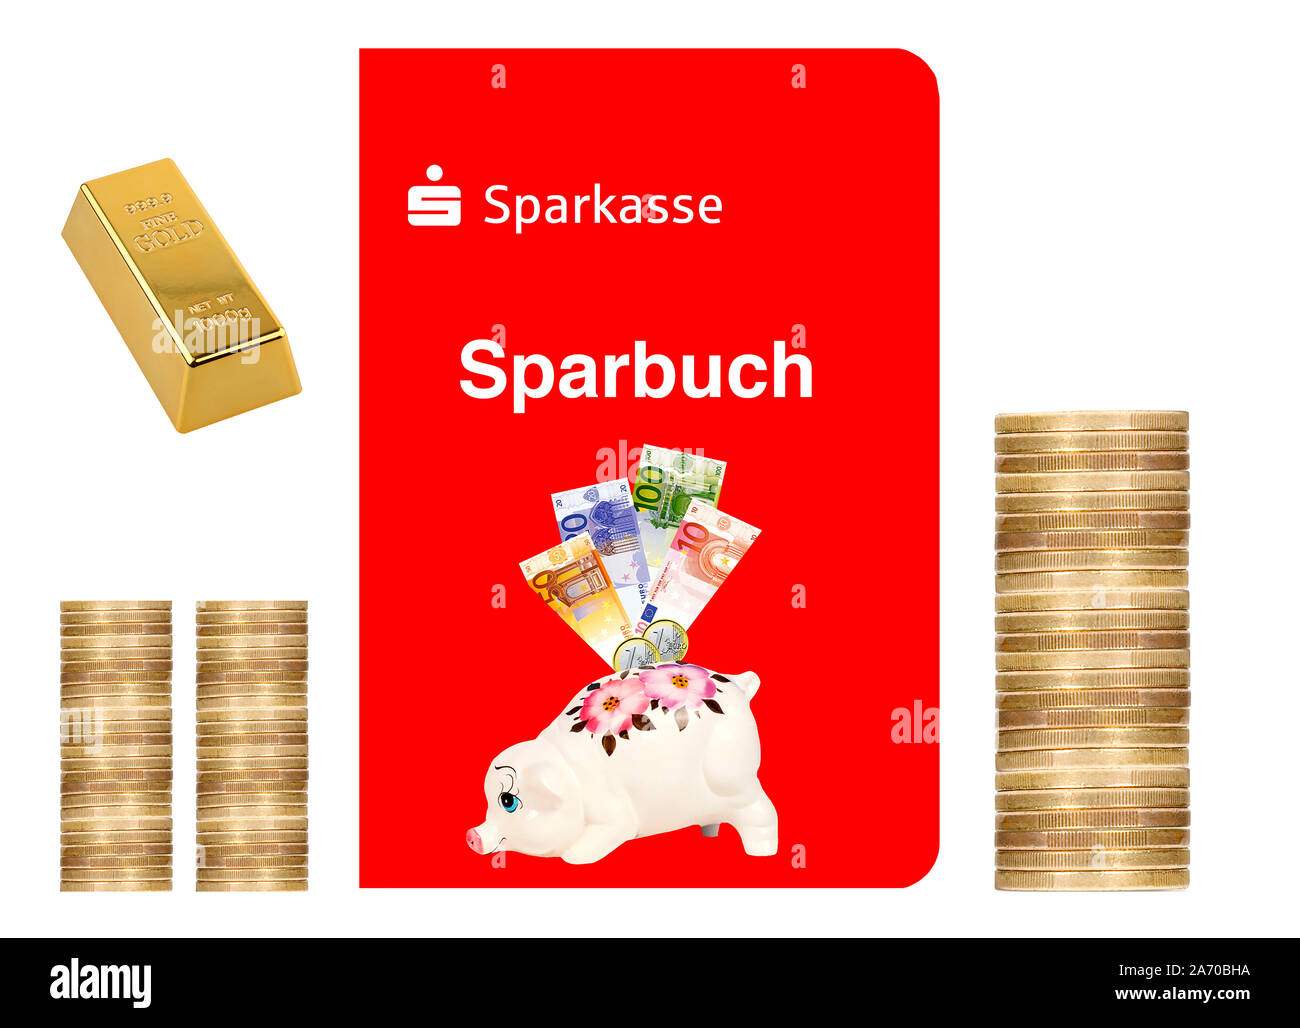 Sparbuch der Sparkasse, Euro Münzen, Goldbarren, Stock Photo